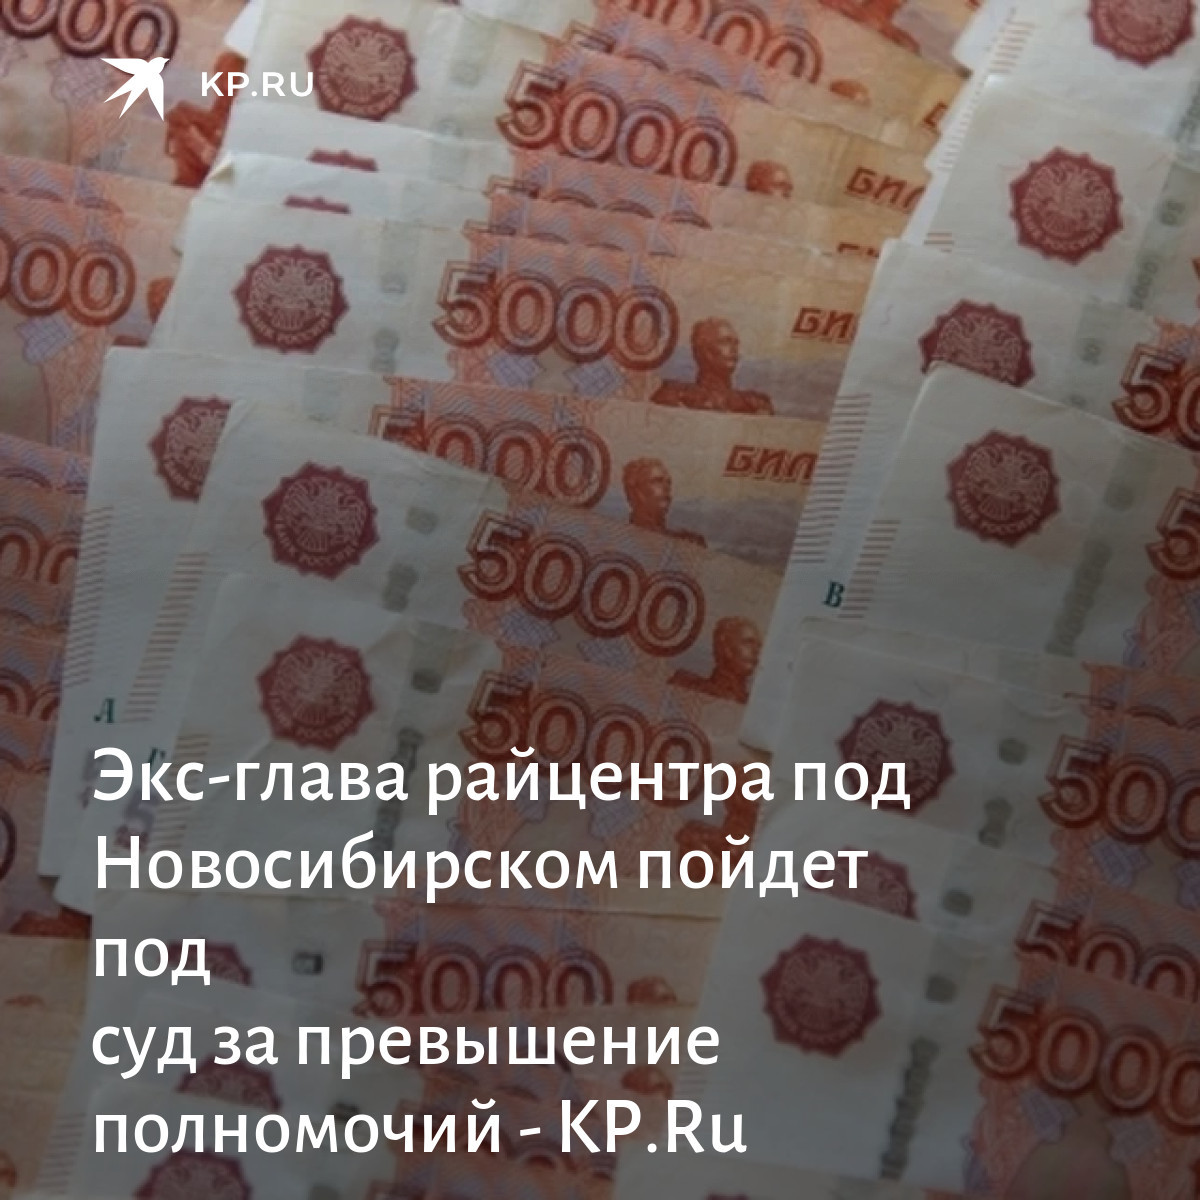 Одеяло за четыре миллиона рублей. Заплати рубль получи 1000000.